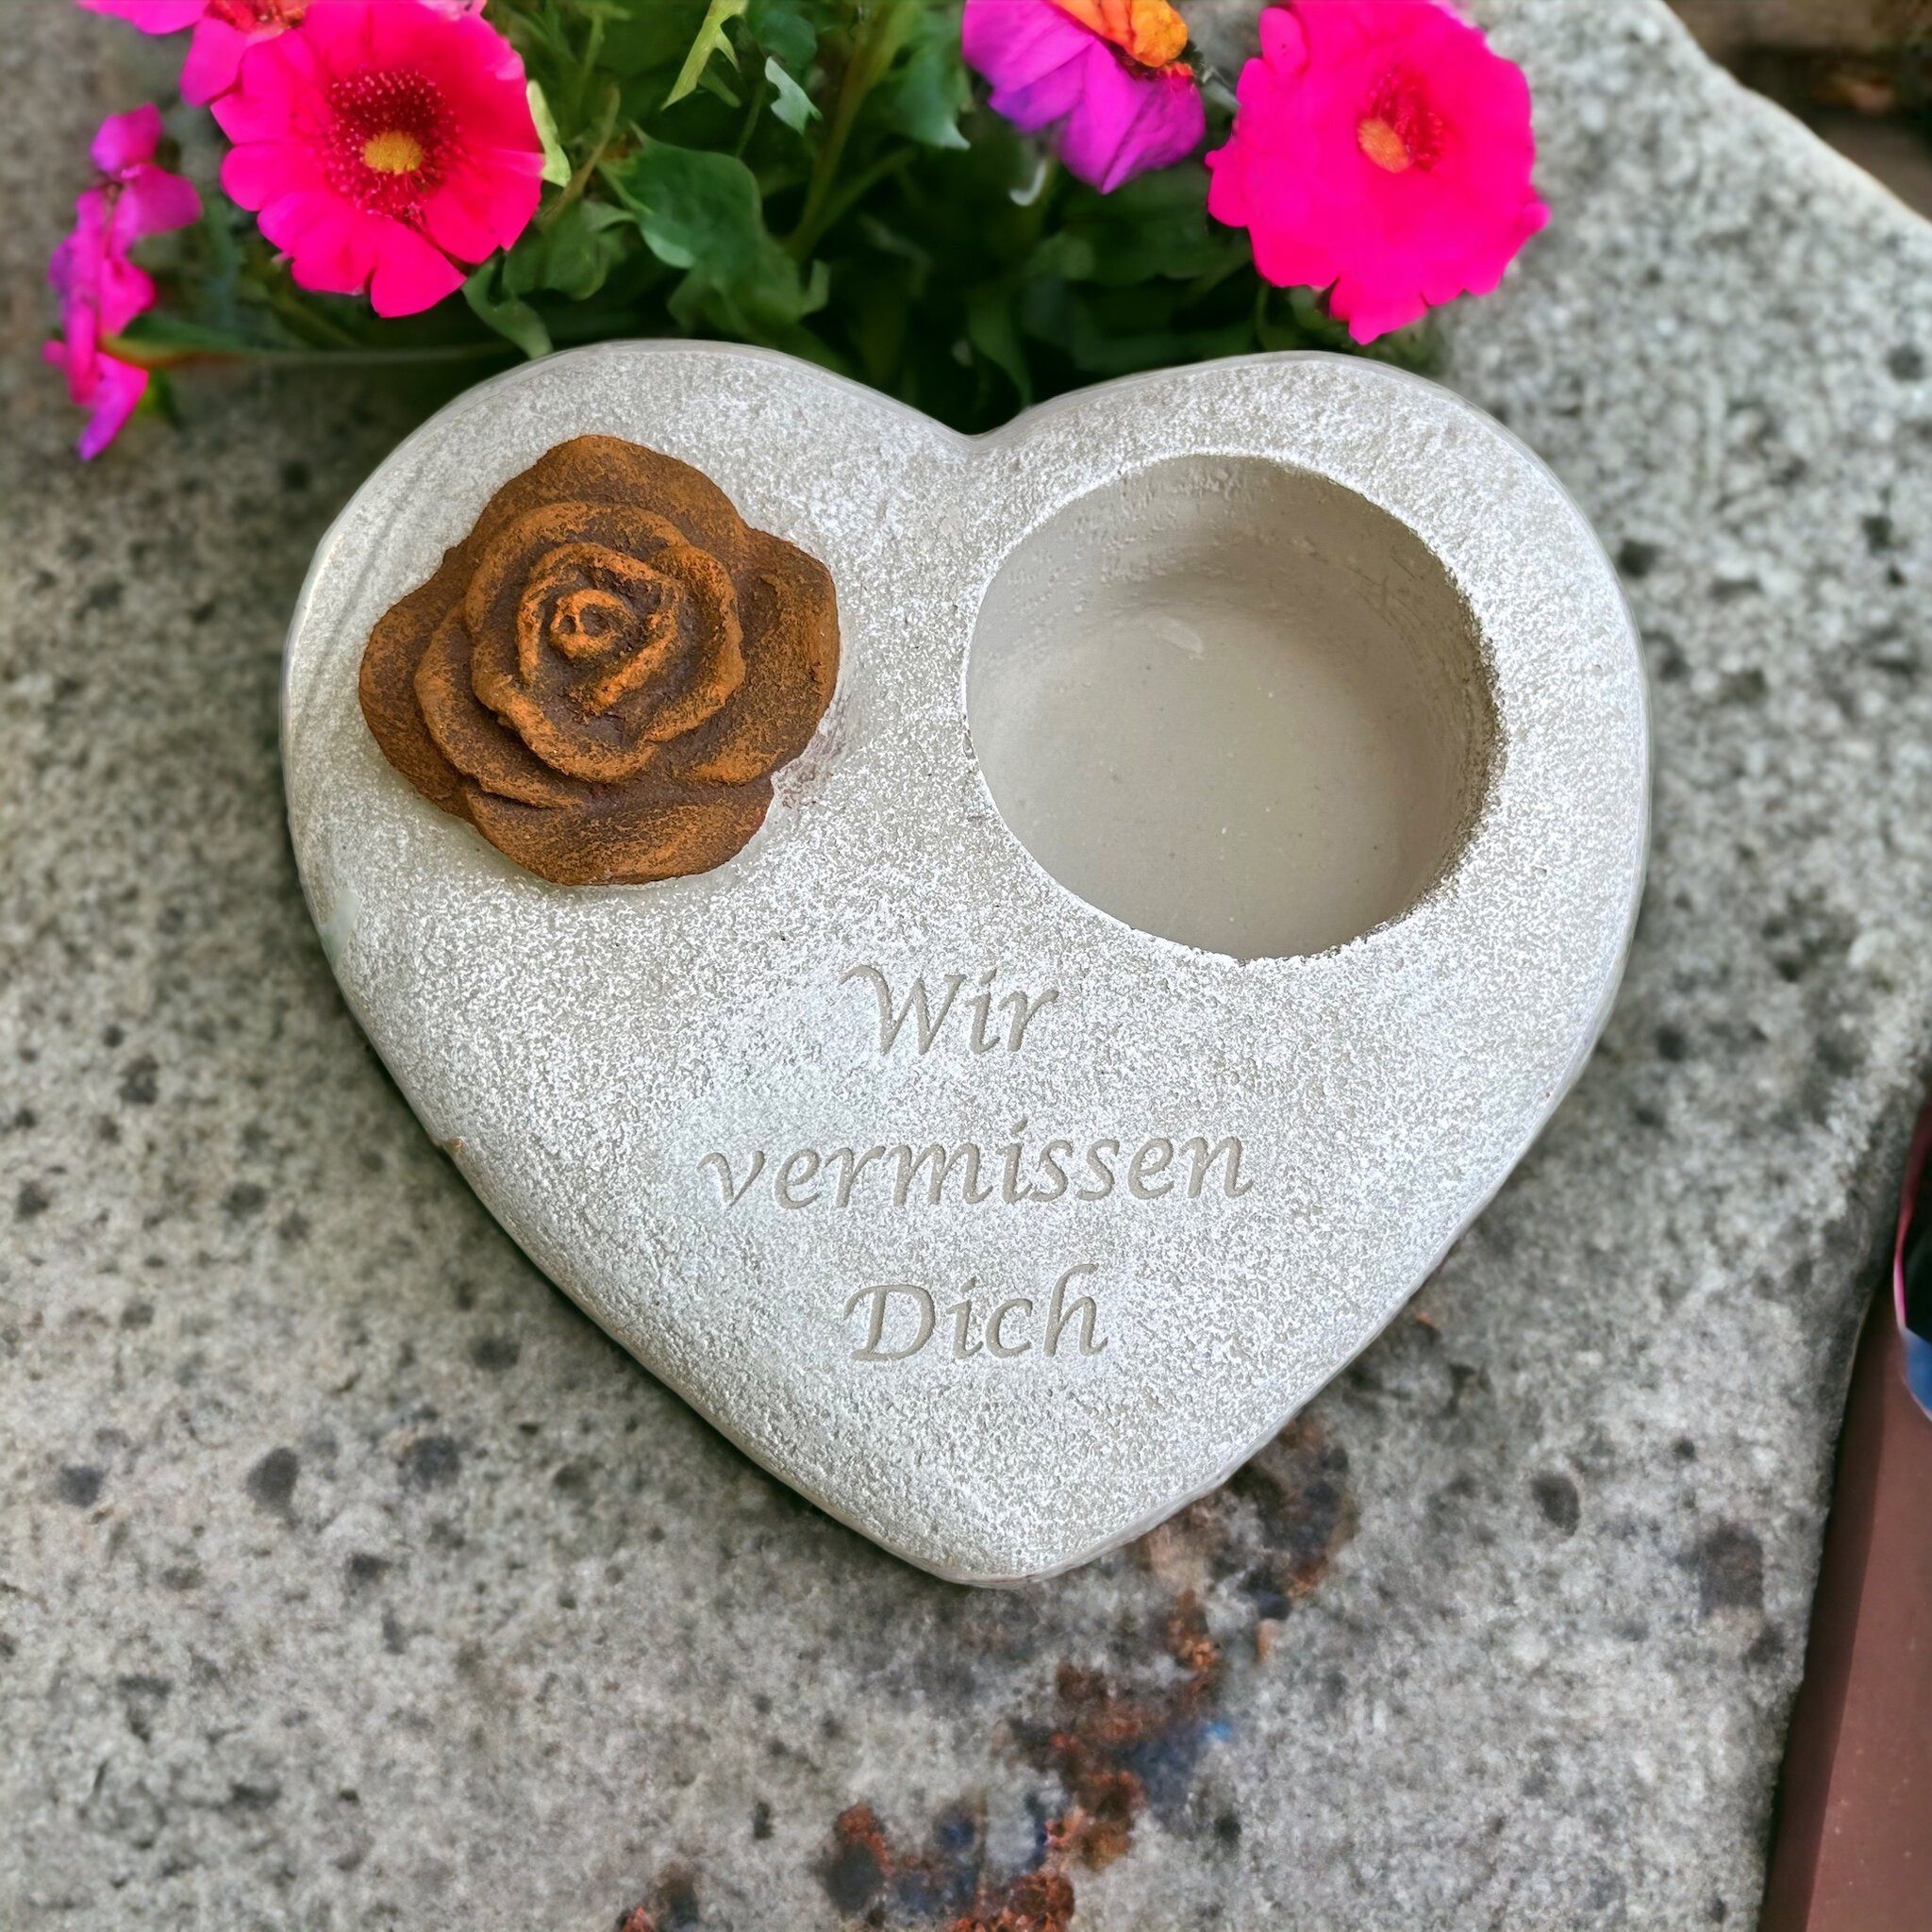 Radami Rohrreinigungspistole Grabherz vermissen Rost Rose - für Wir - Dich Grablicht Grabschmuck